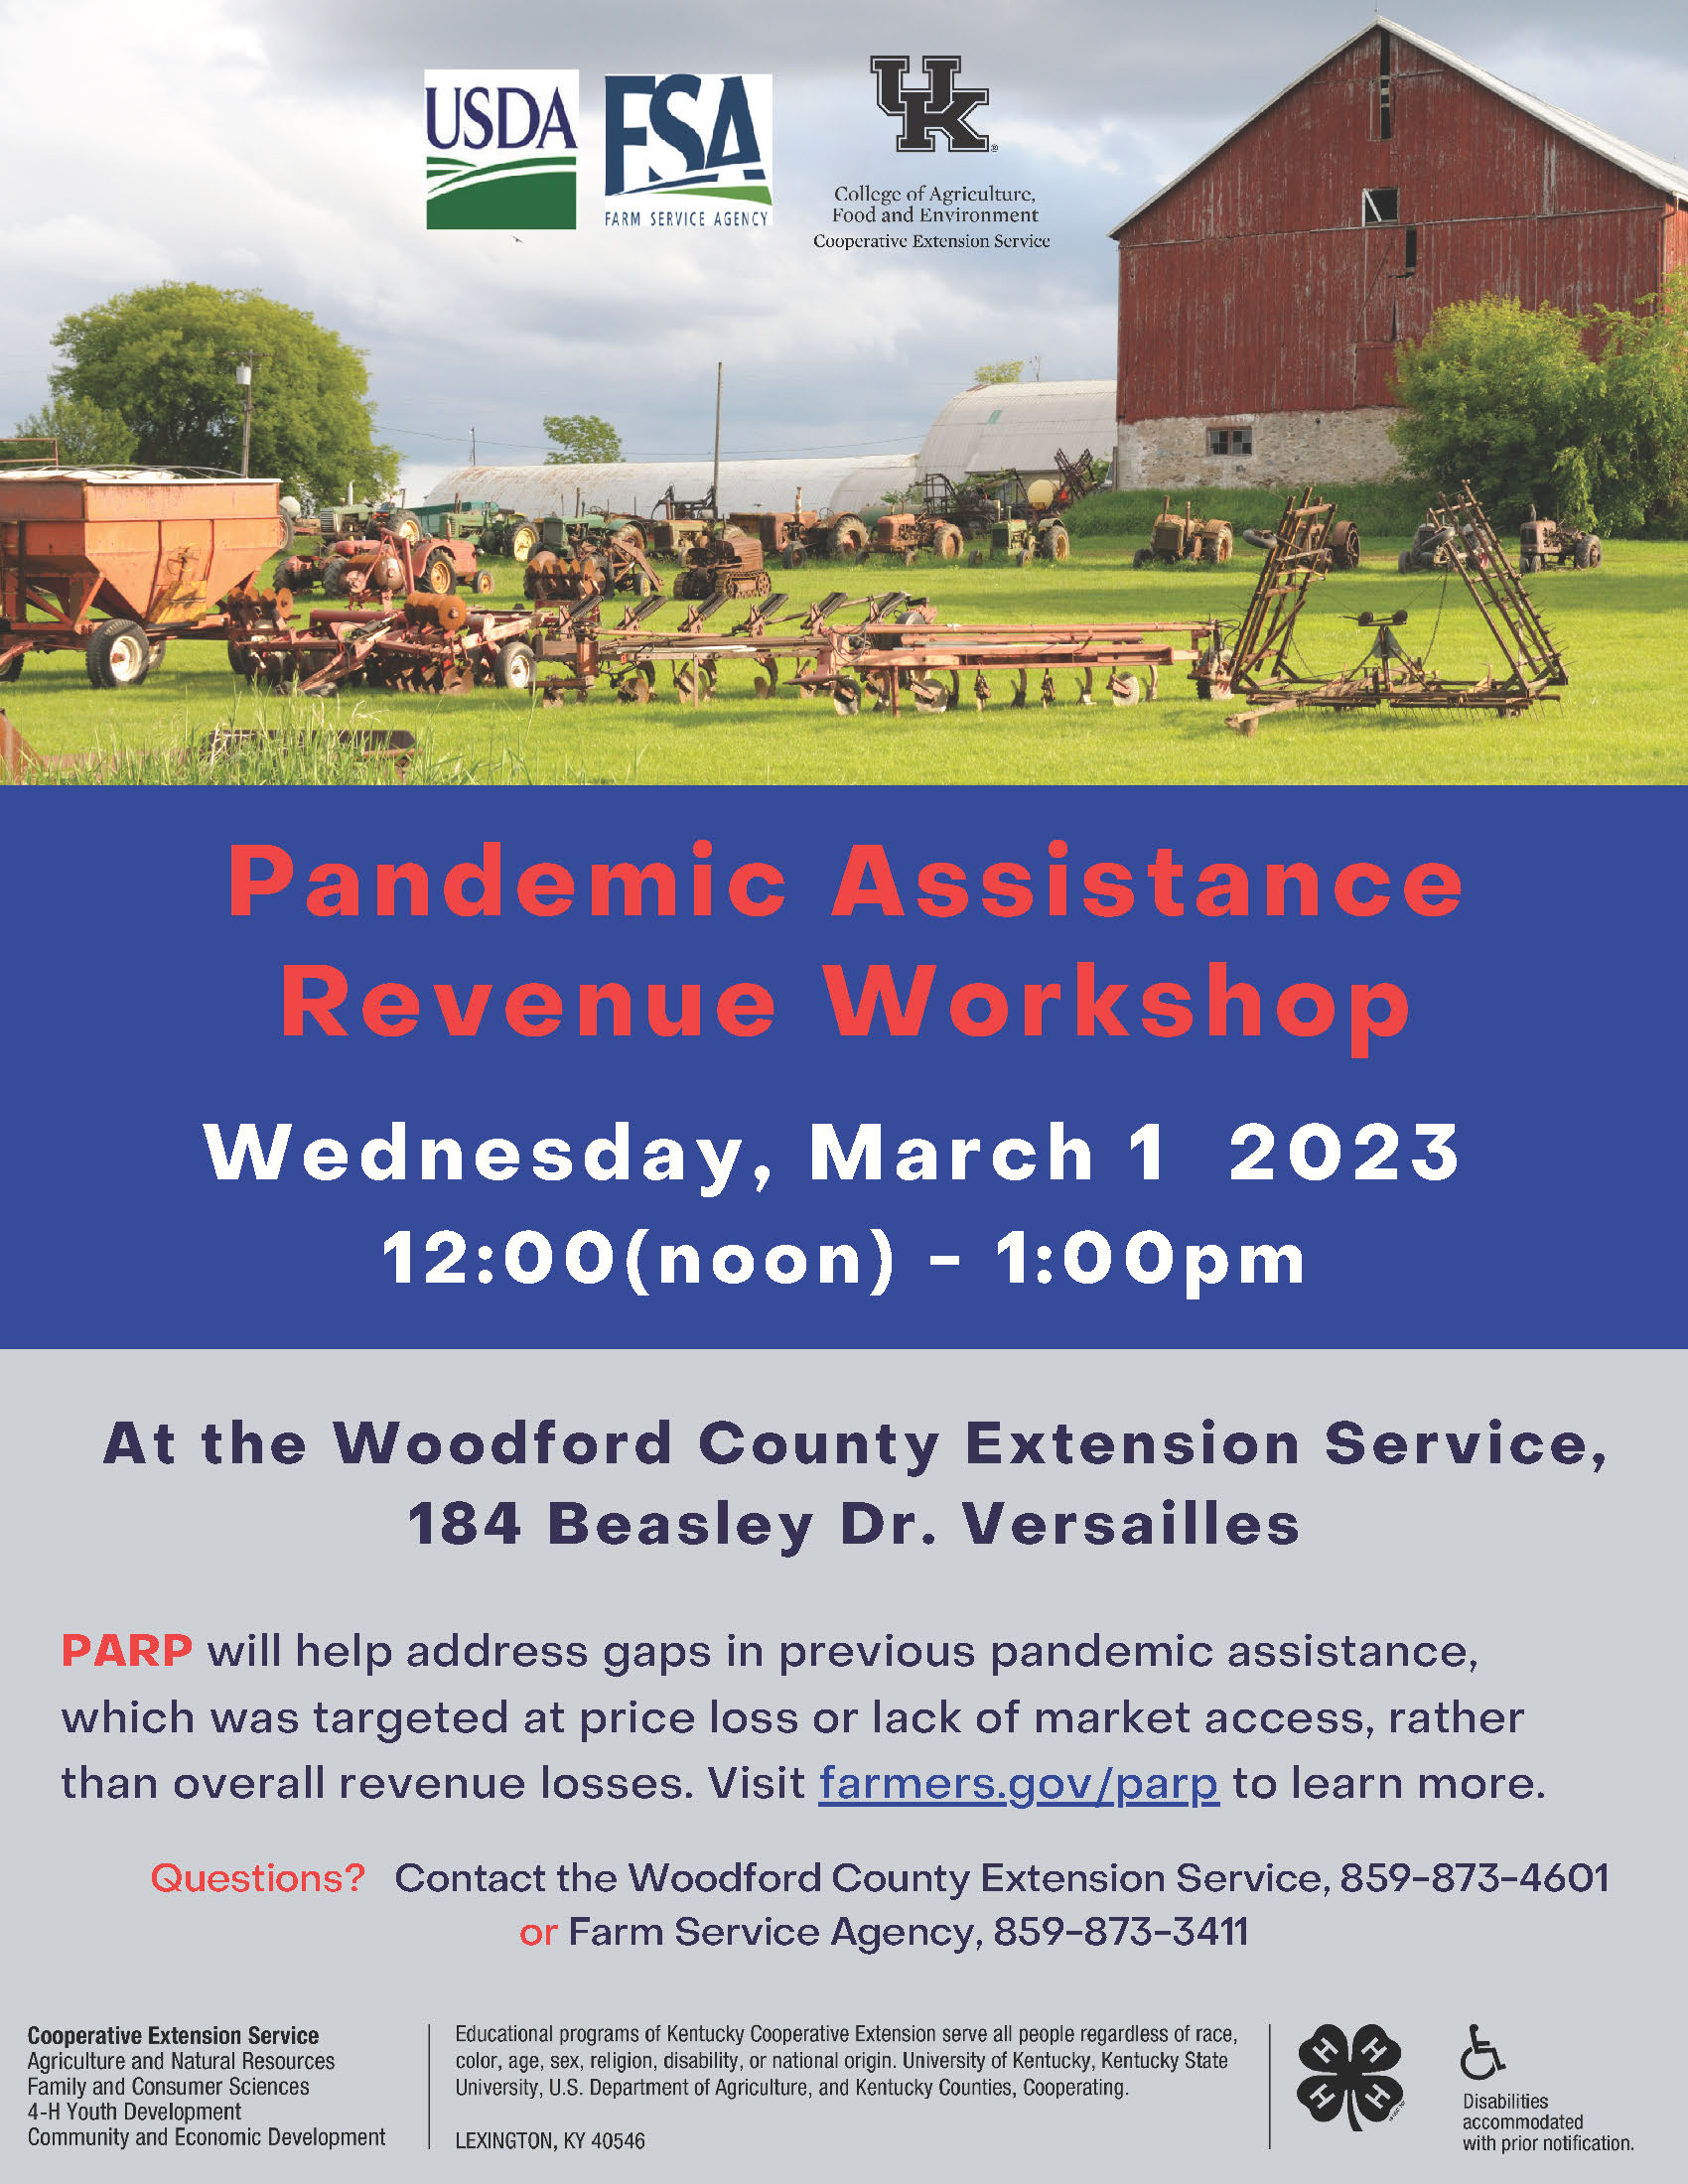 Pandemis Assistance Revenue Workshop